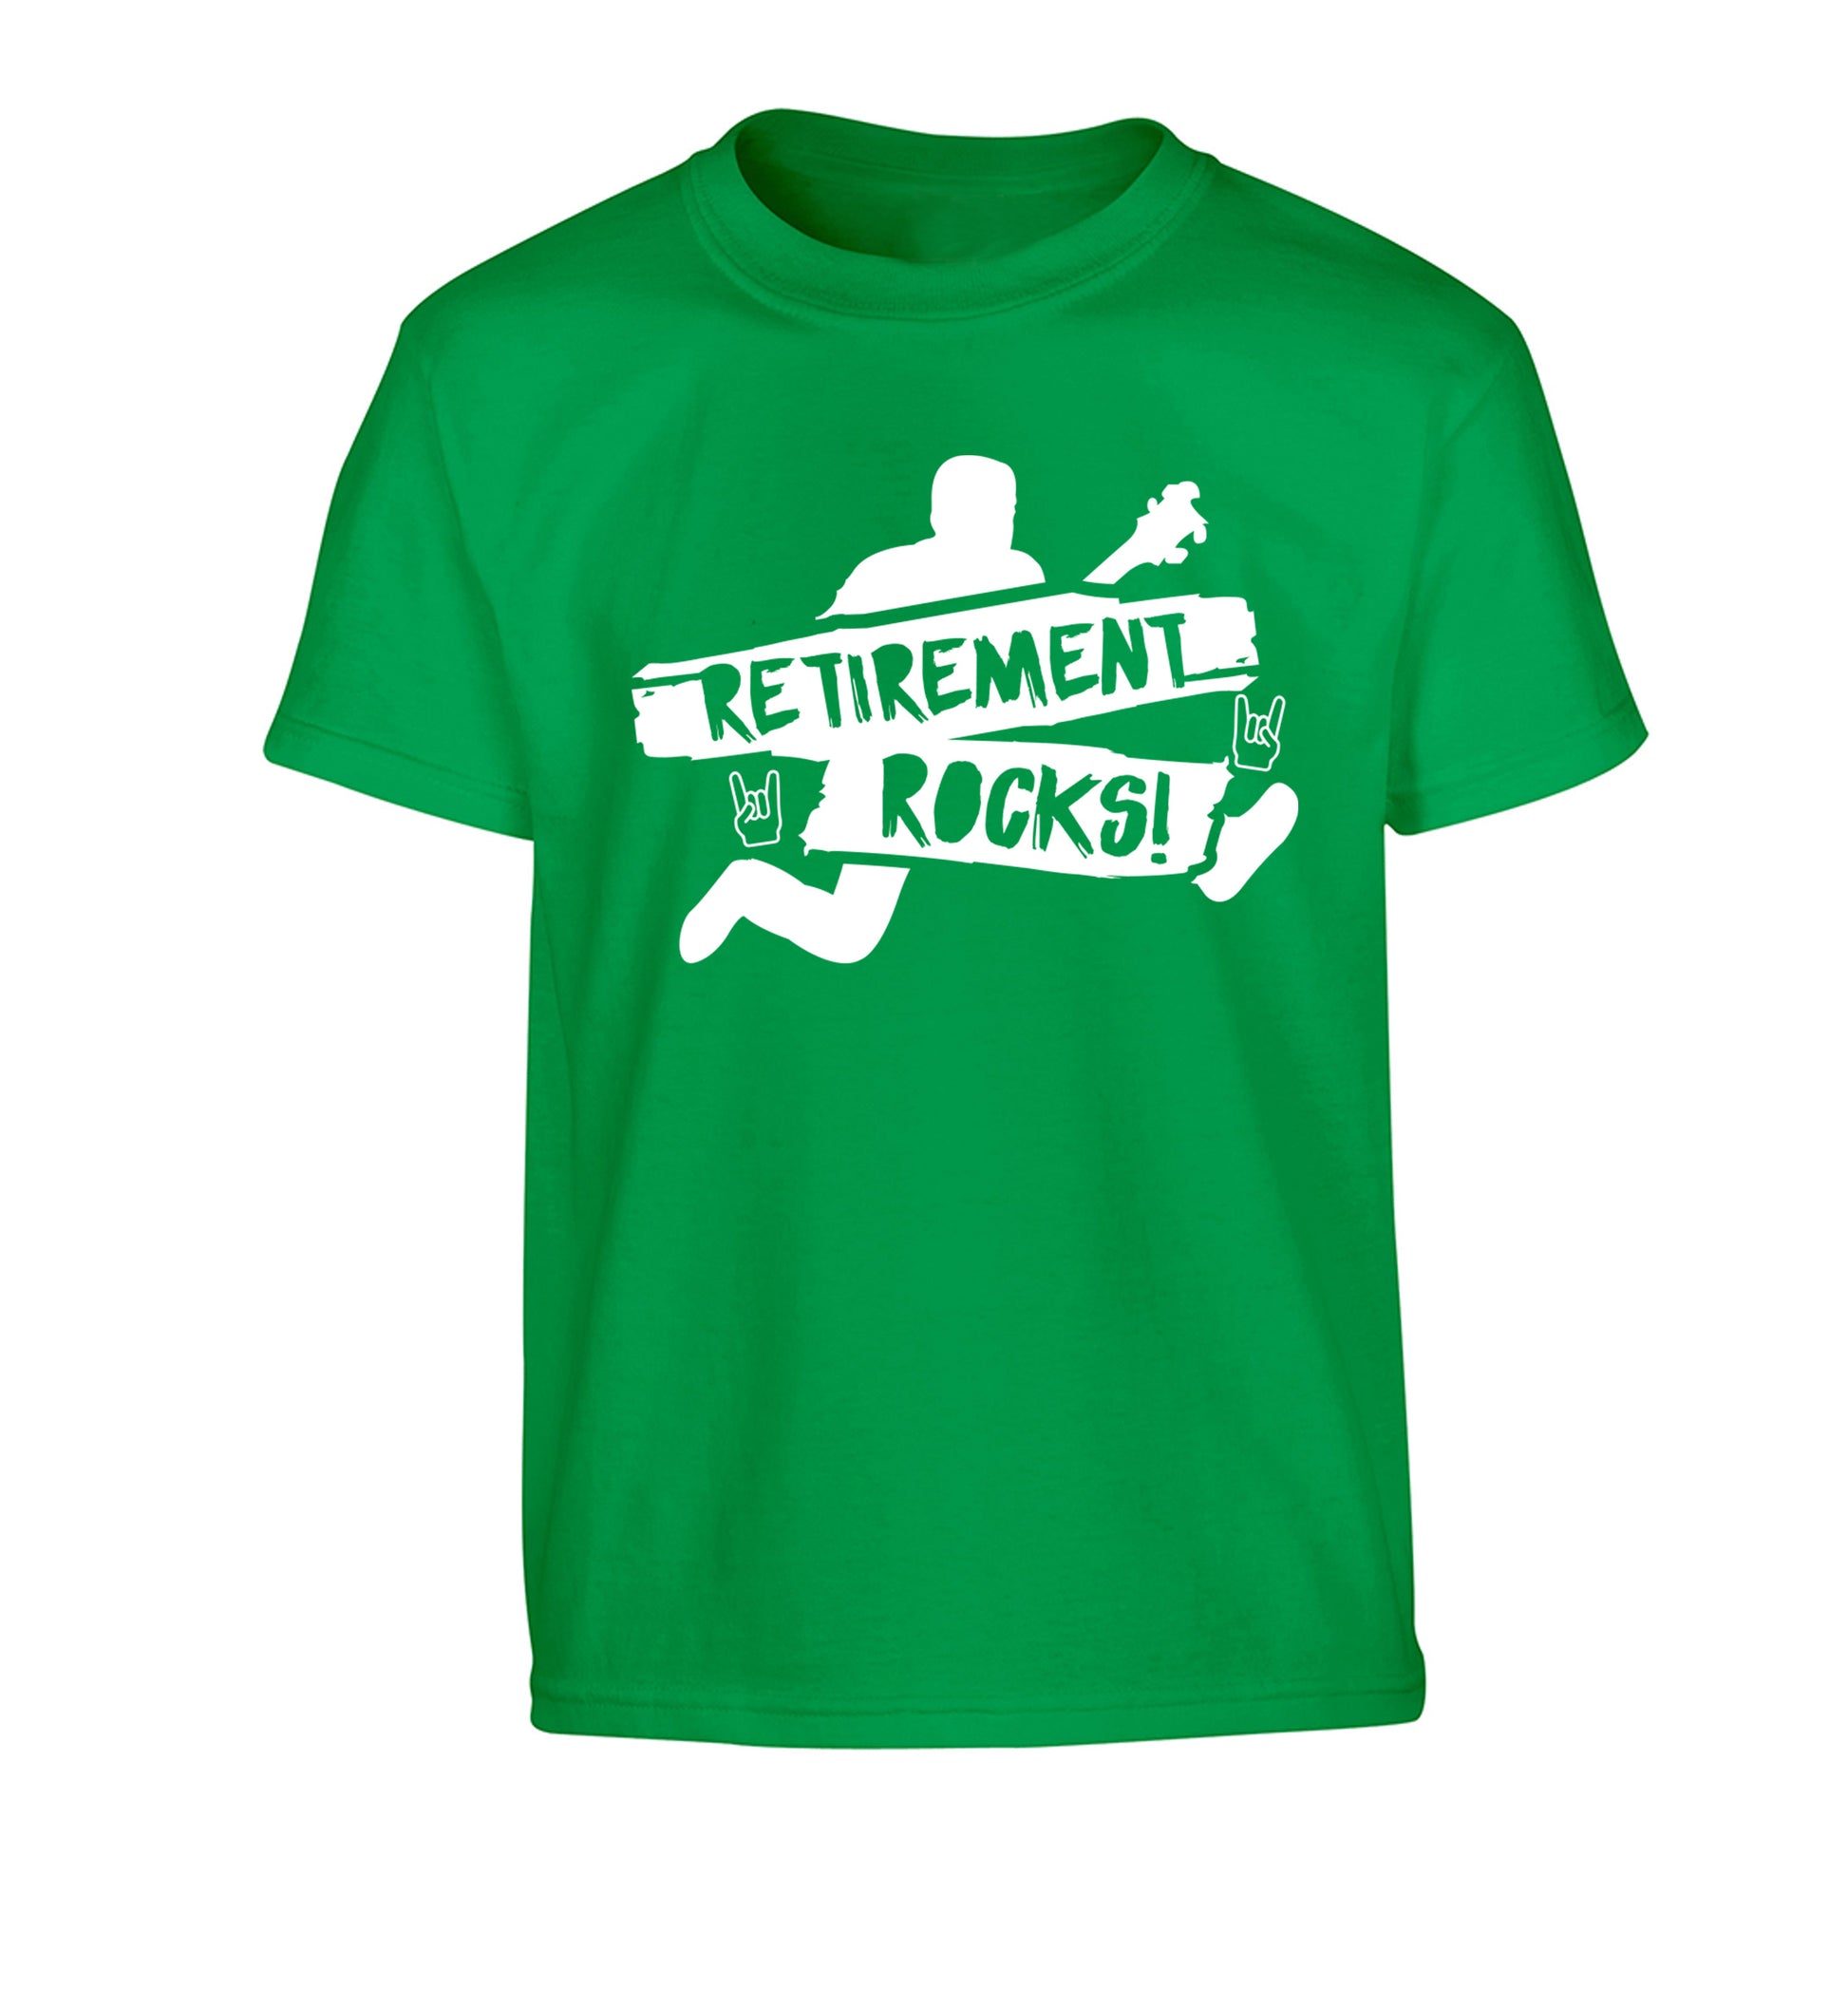 Retirement Rocks Children's green Tshirt 12-13 Years